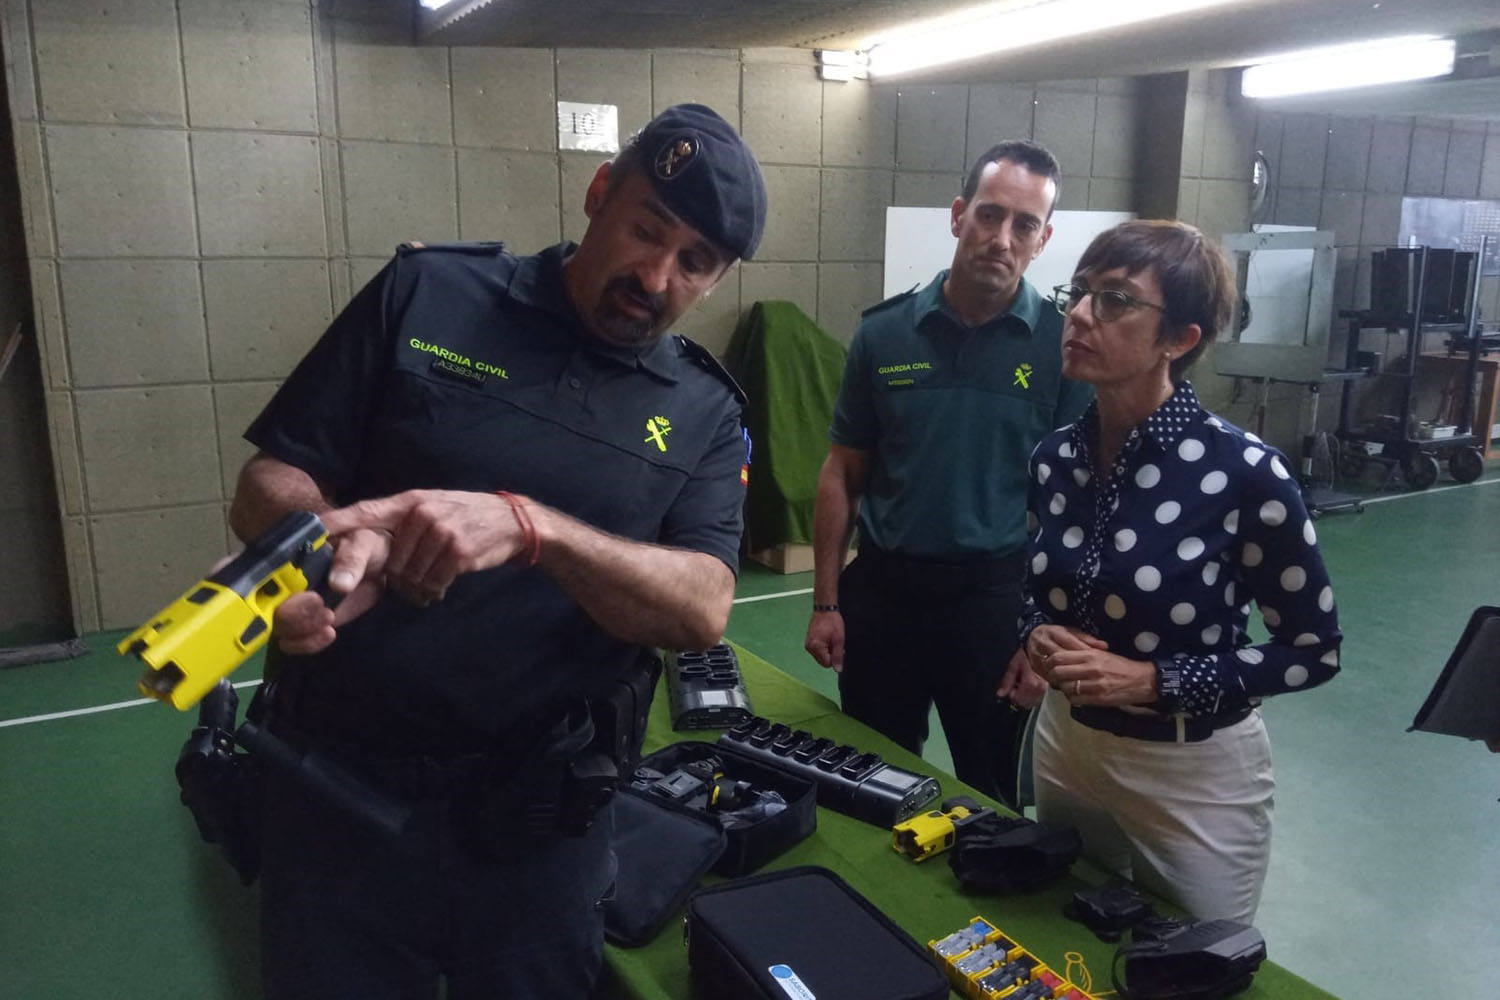 Qué son las pistolas táser que utilizará la policía de Madrid?, Actualidad